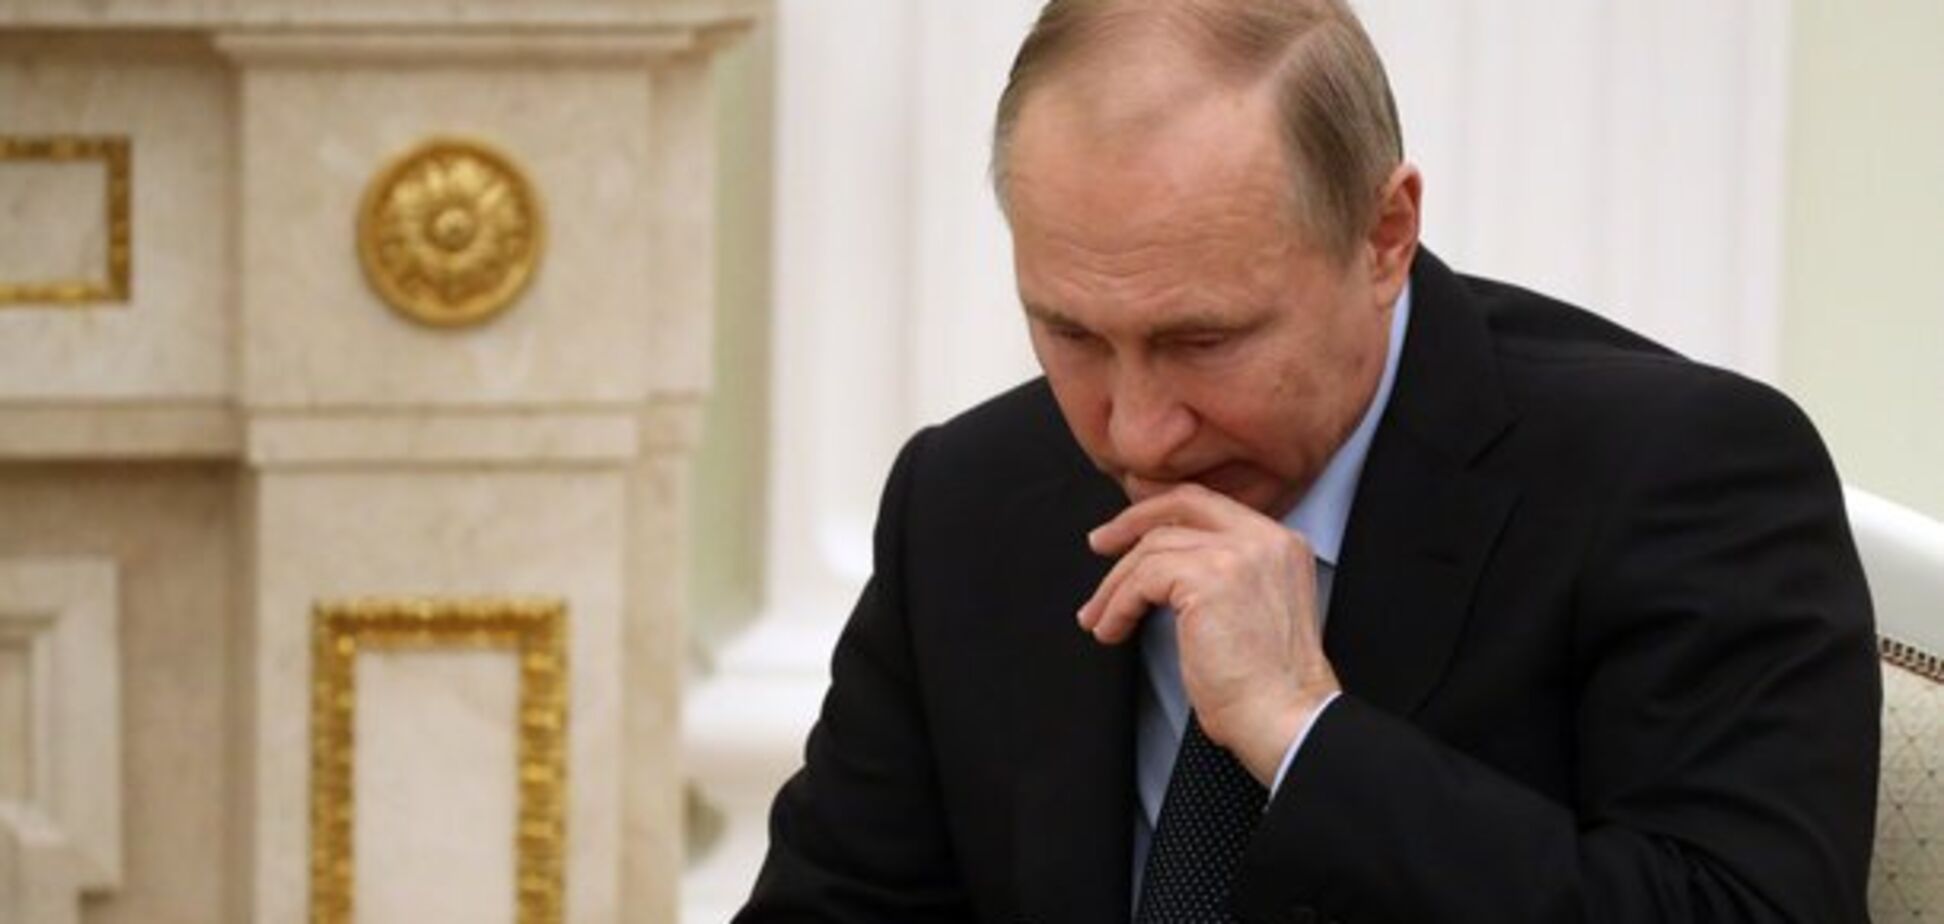  'Не хотим создавать проблемы!' Путин оправдался за российские паспорта для 'Л/ДНР'